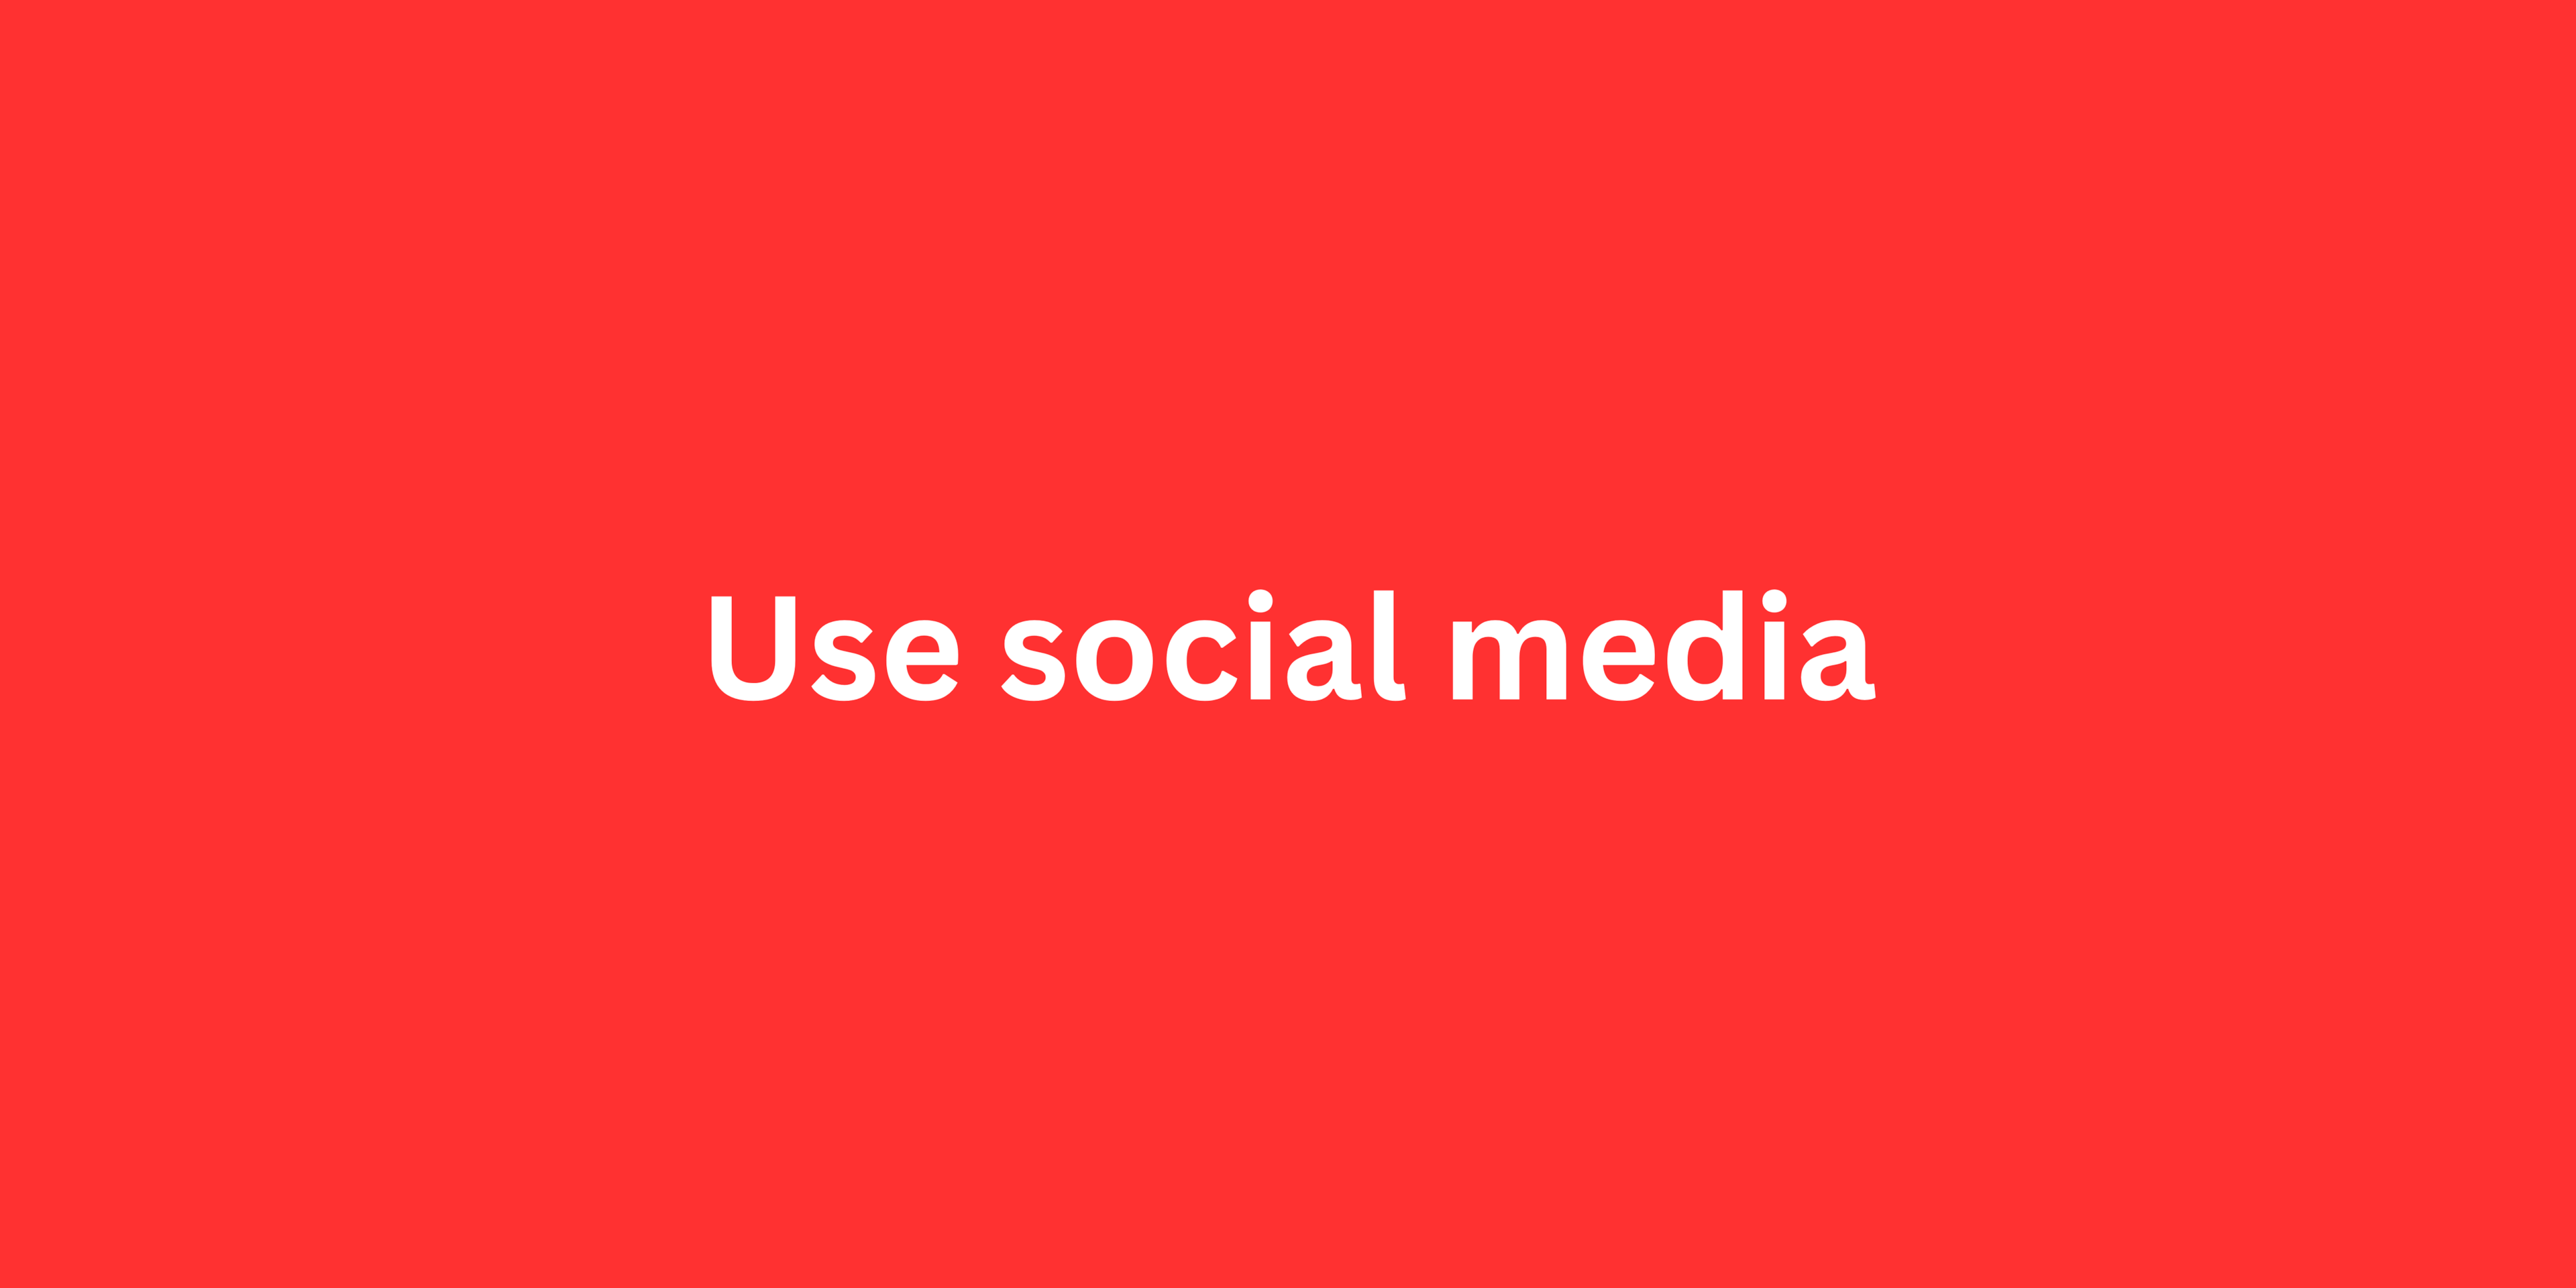 Use social media